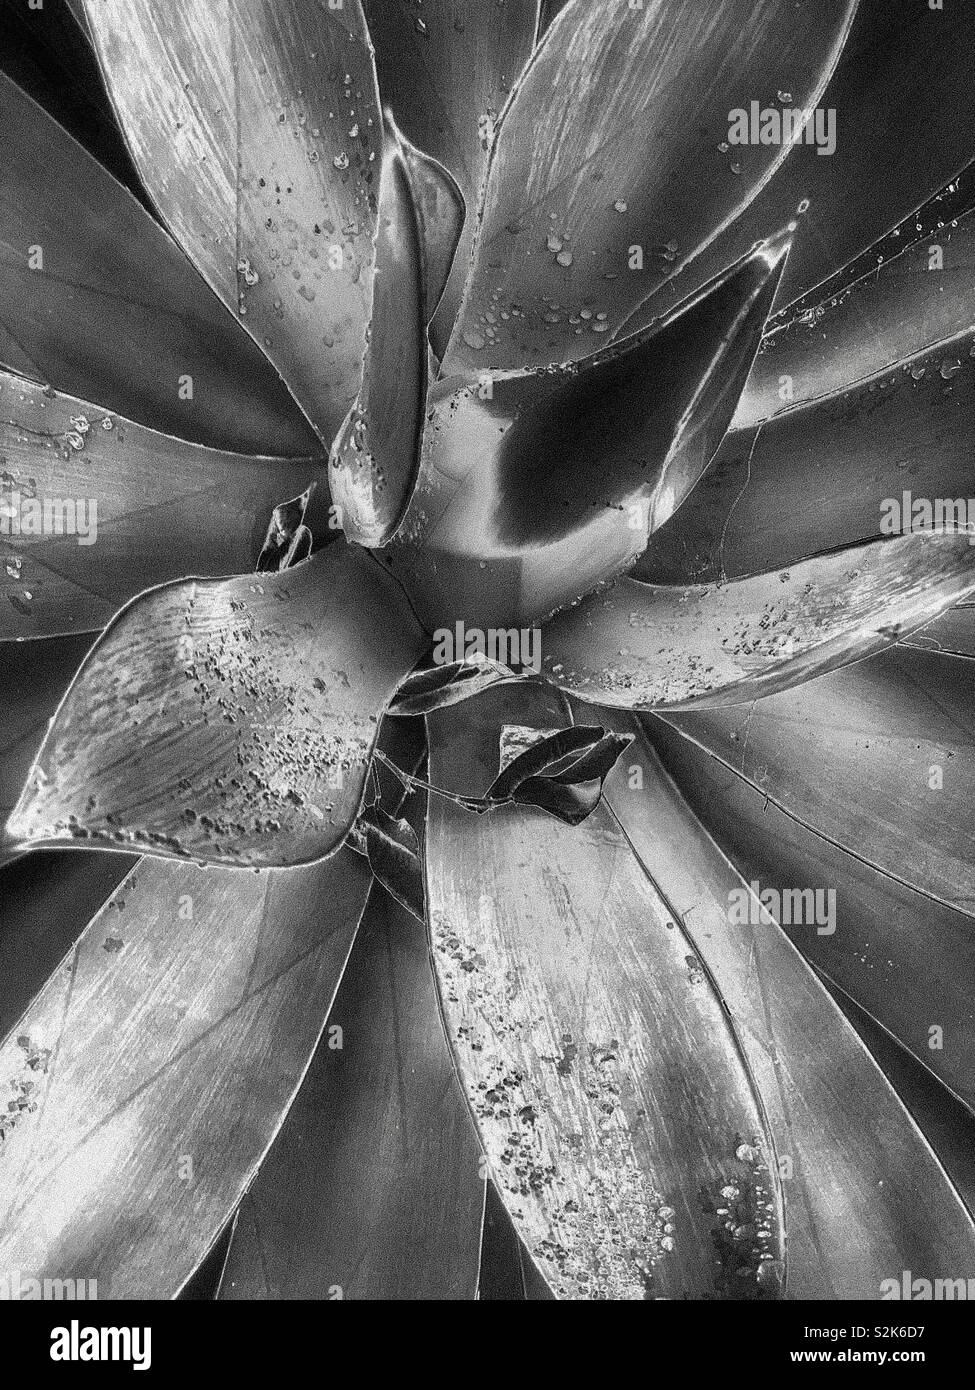 龍舌蘭科之翡翠盤 / Agave attenuata Salm-Dyck in black and white. Stock Photo